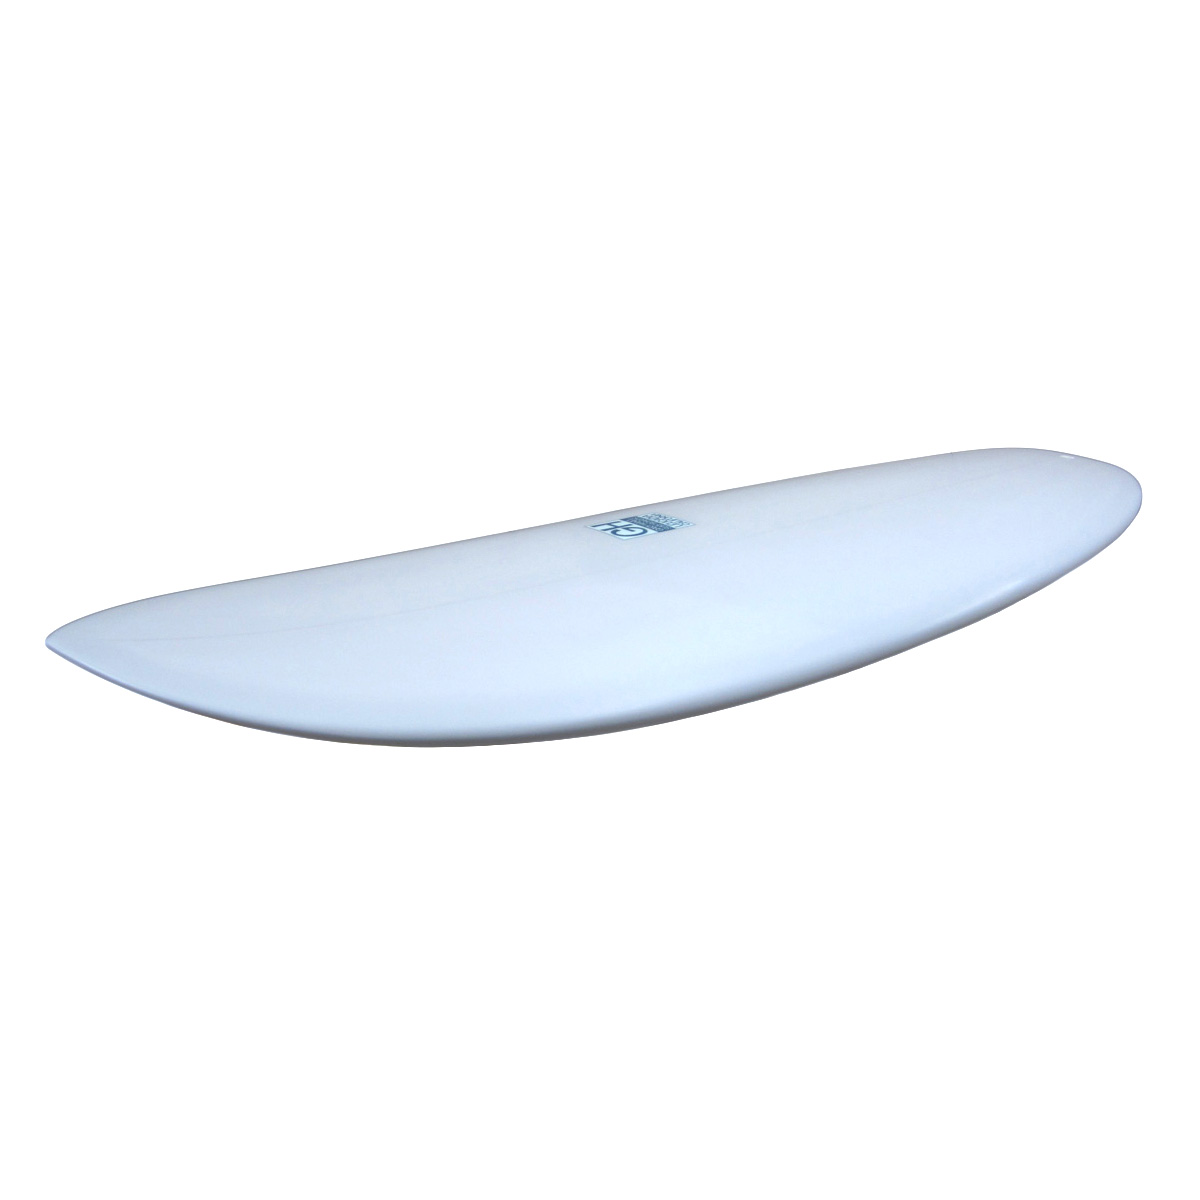 Gary Hanel Surfboards  / PILL 5`9